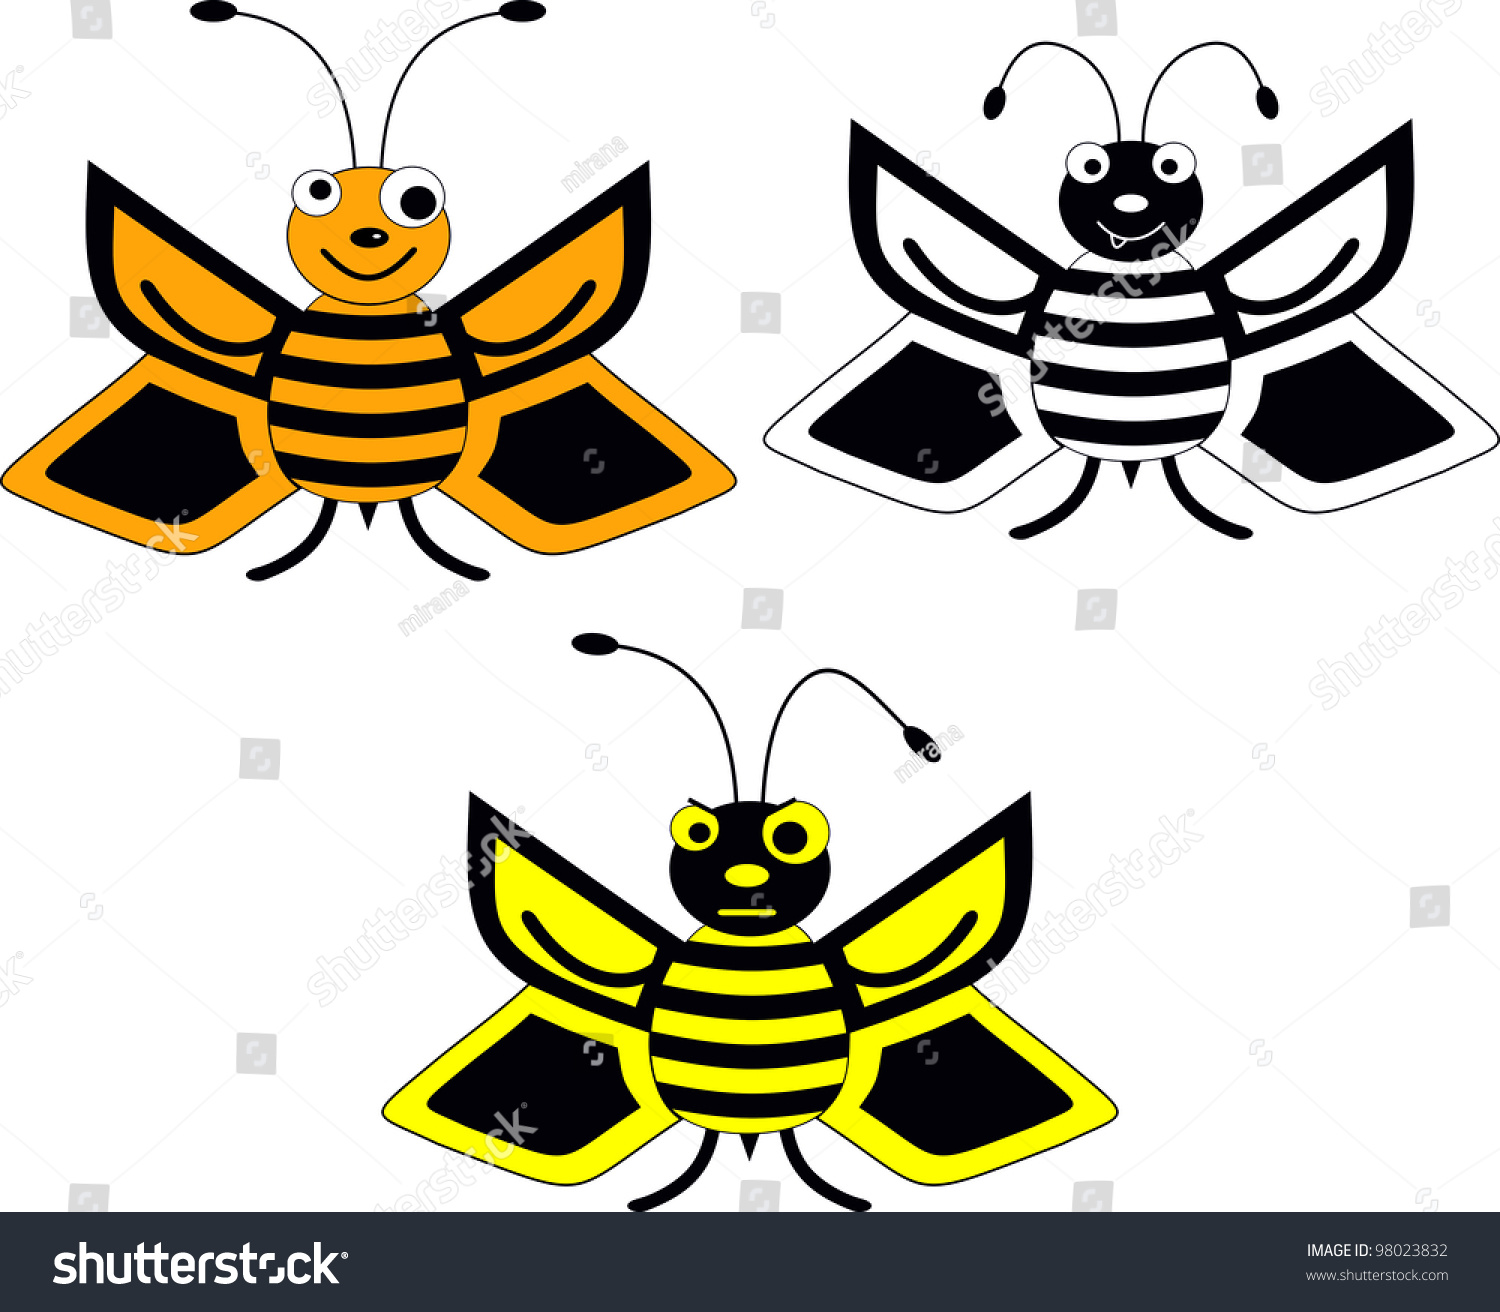 Vector Bee - 98023832 : Shutterstock